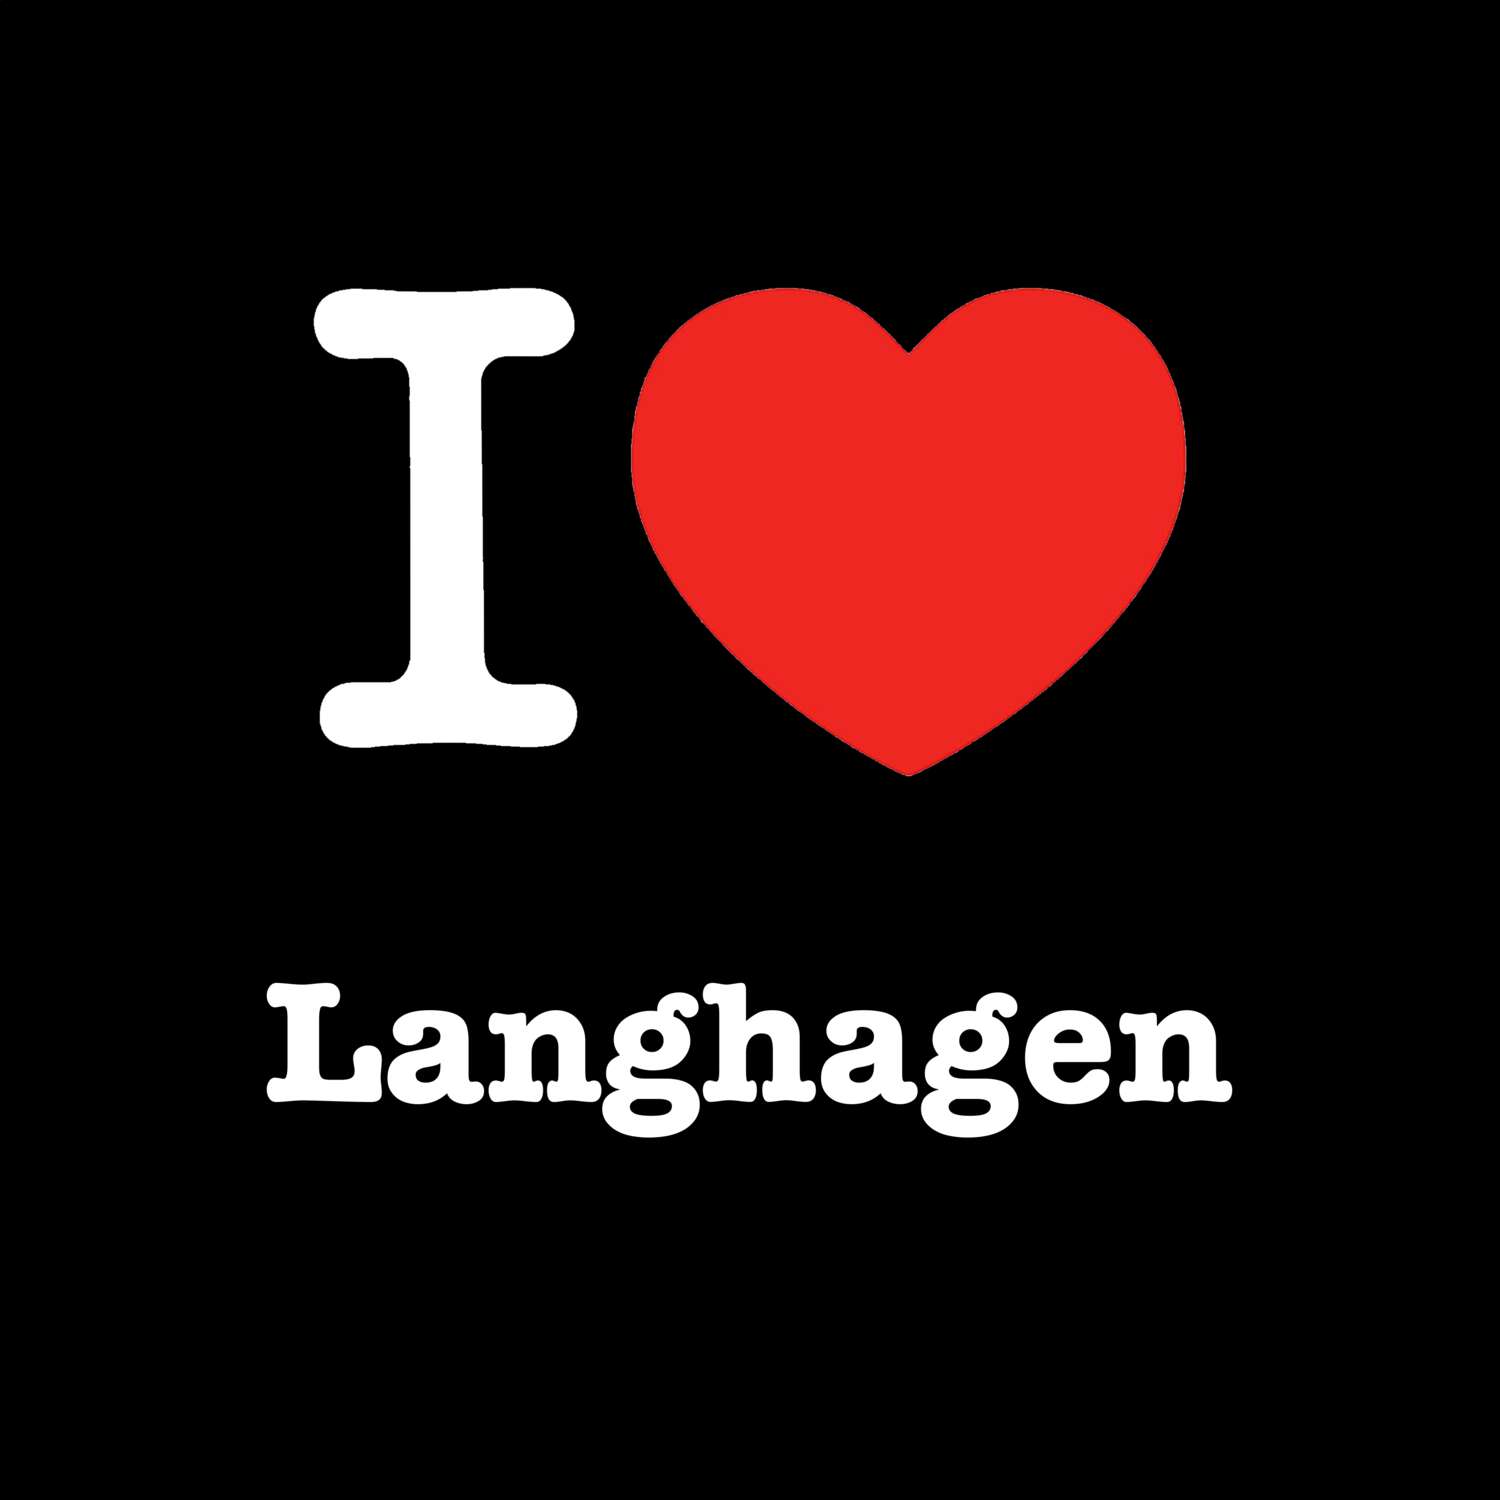 Langhagen T-Shirt »I love«